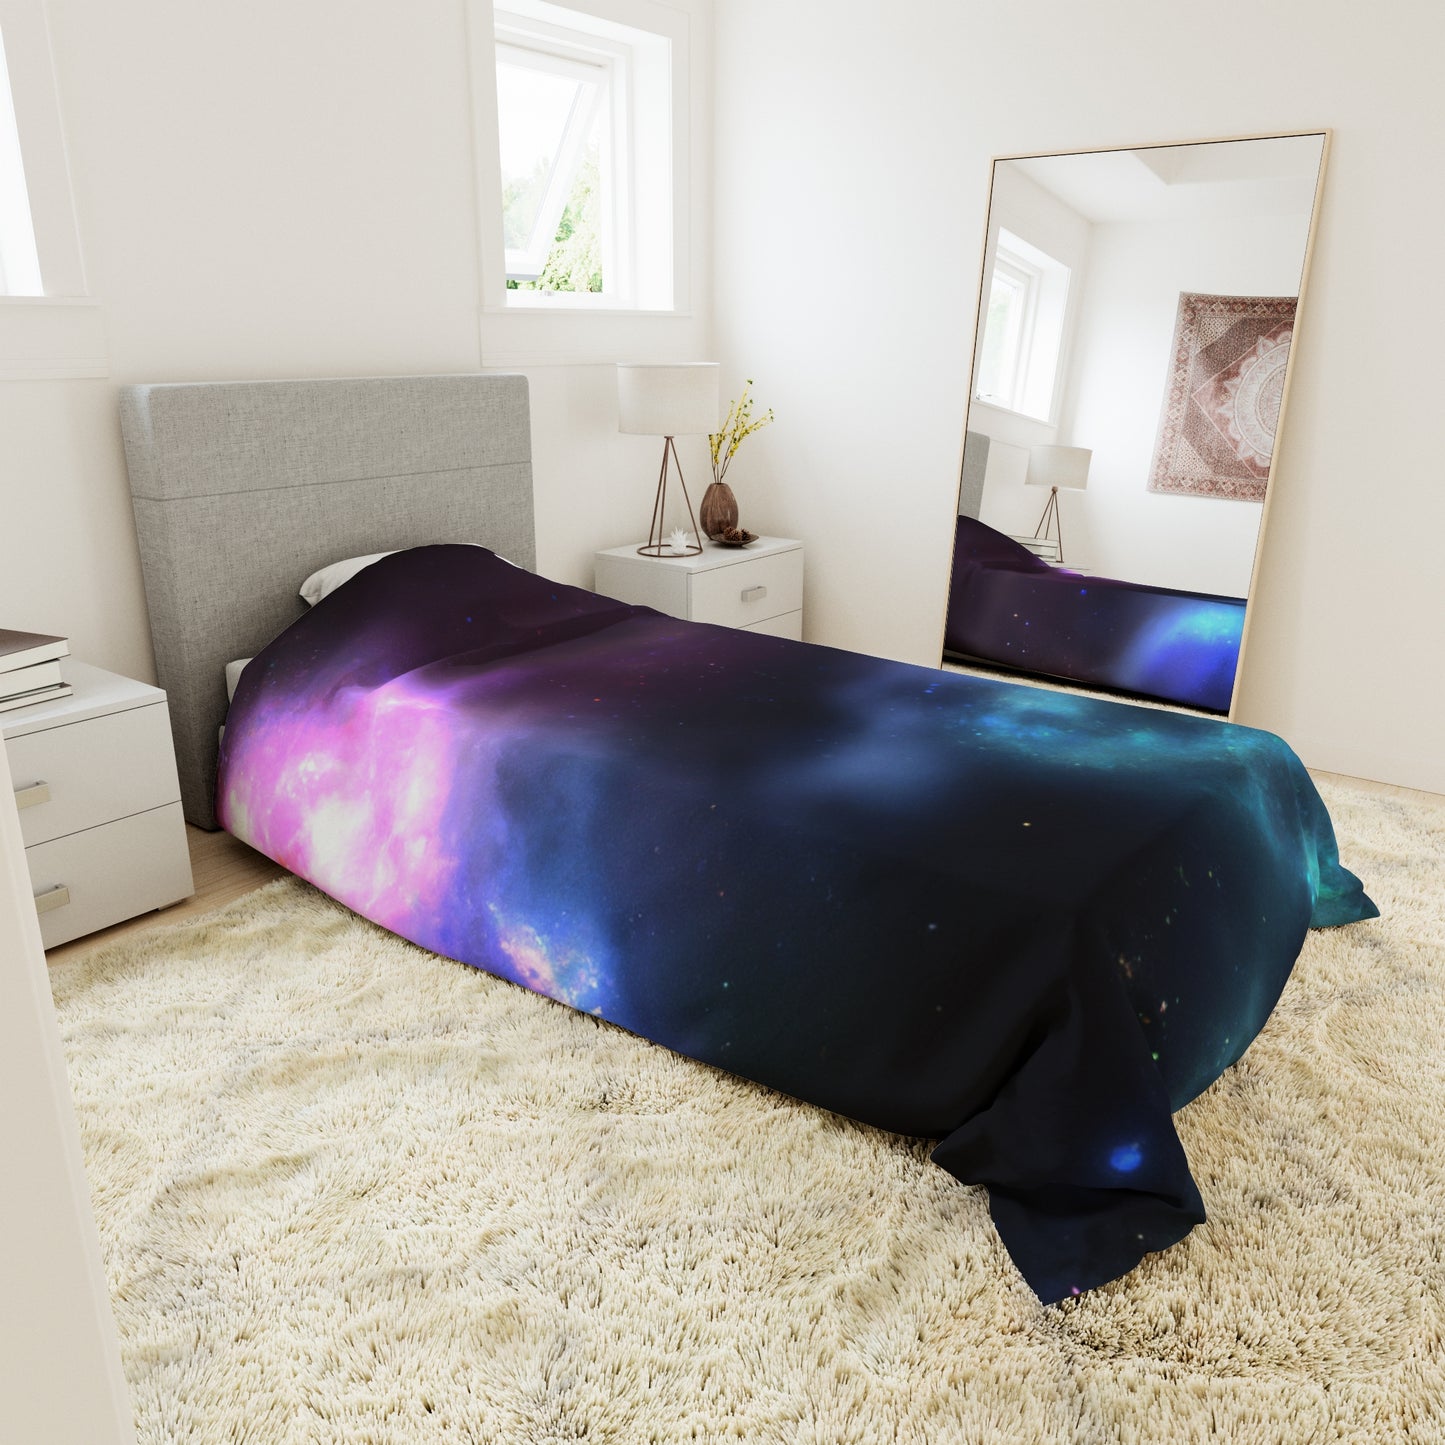 Dreamie Moonbeam - Astronomy Duvet Bed Cover